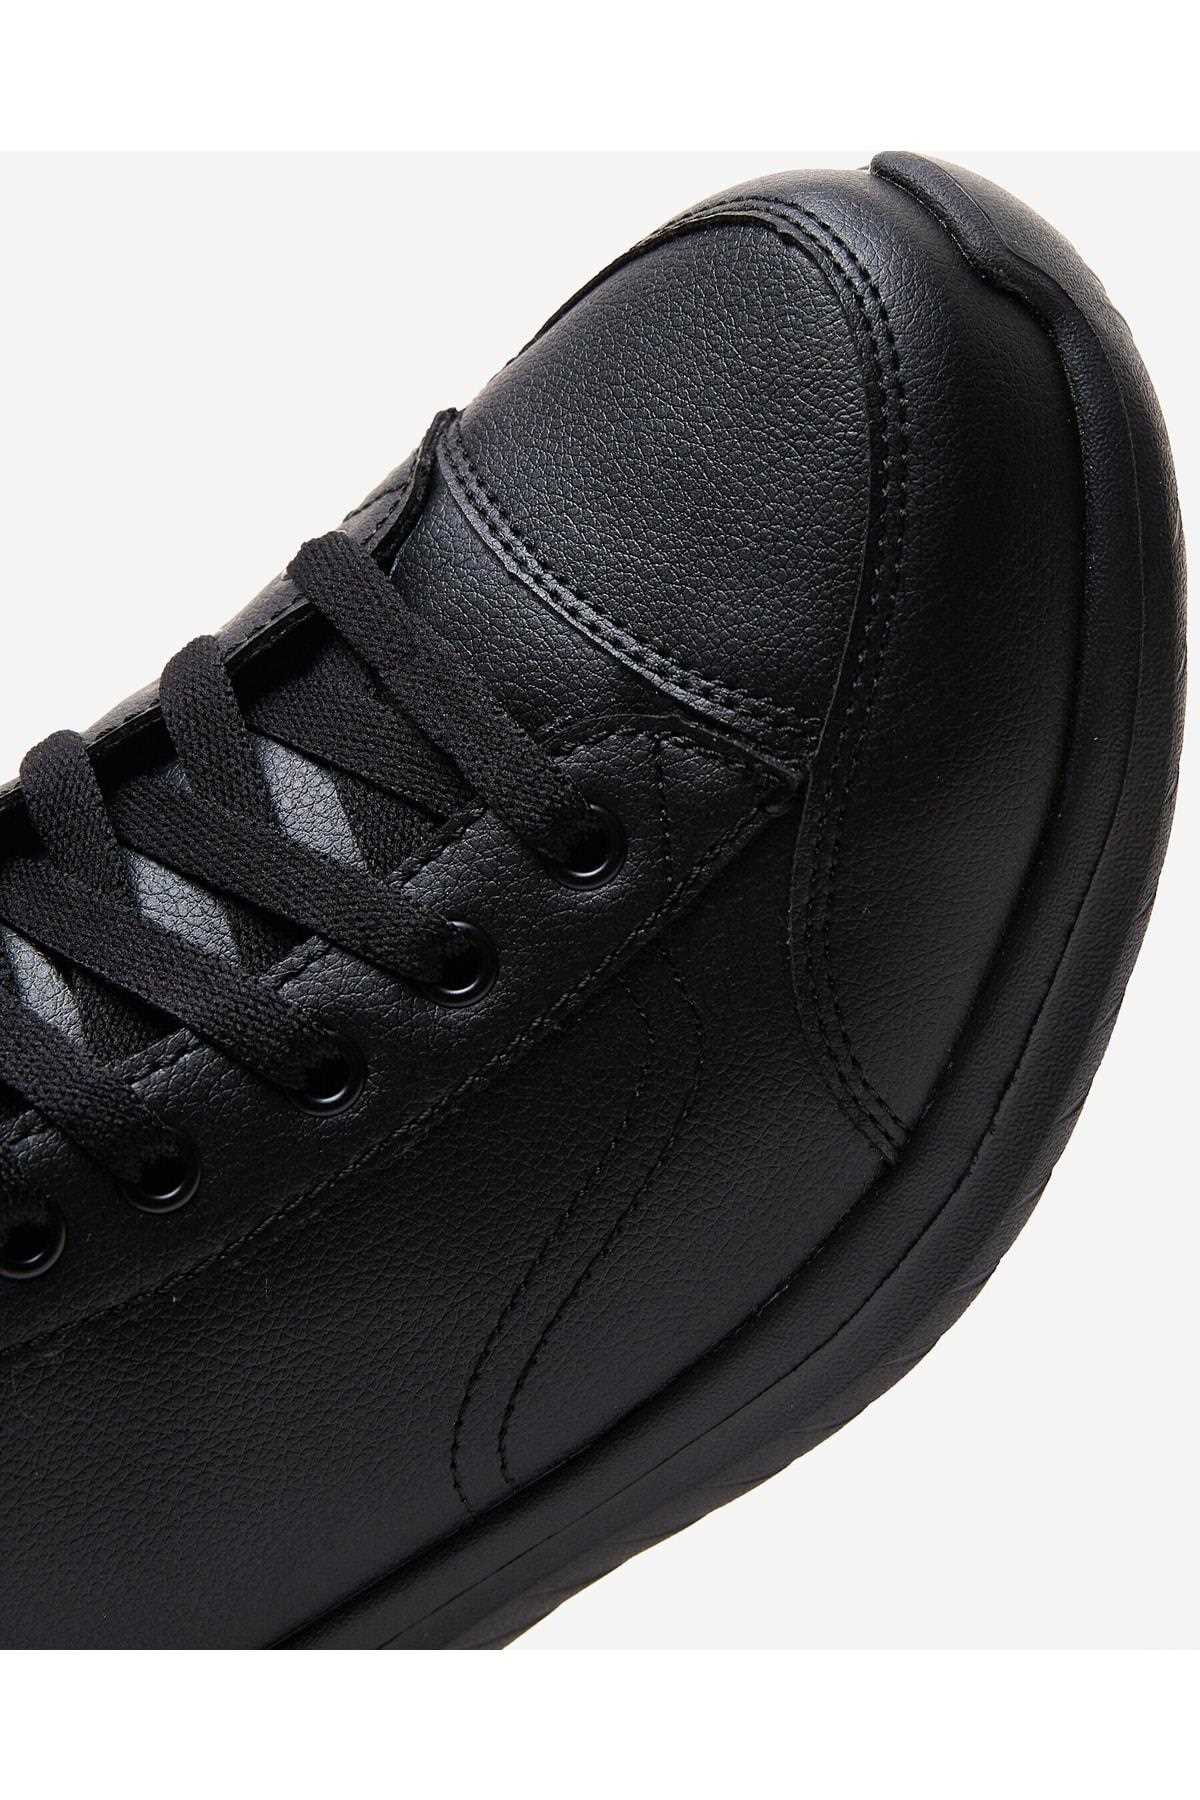 فروش نقدی کفش مخصوص پیاده روی مردانه خاص برند اسکیچرز رنگ مشکی کد ty411910091